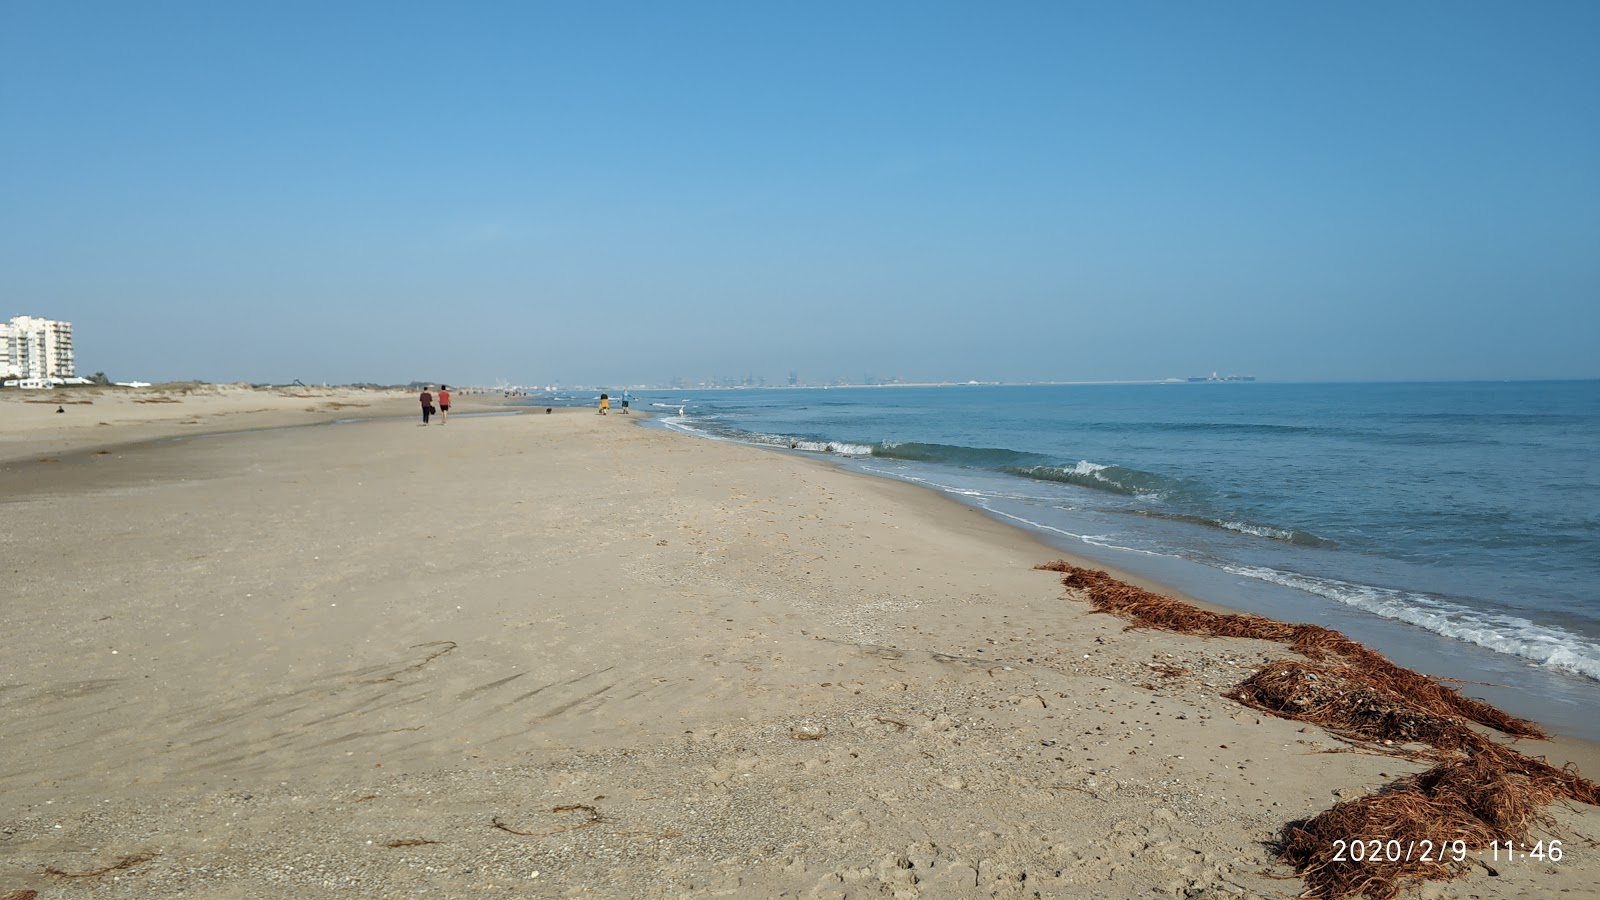 Platja la Garrofera'in fotoğrafı kahverengi kum yüzey ile